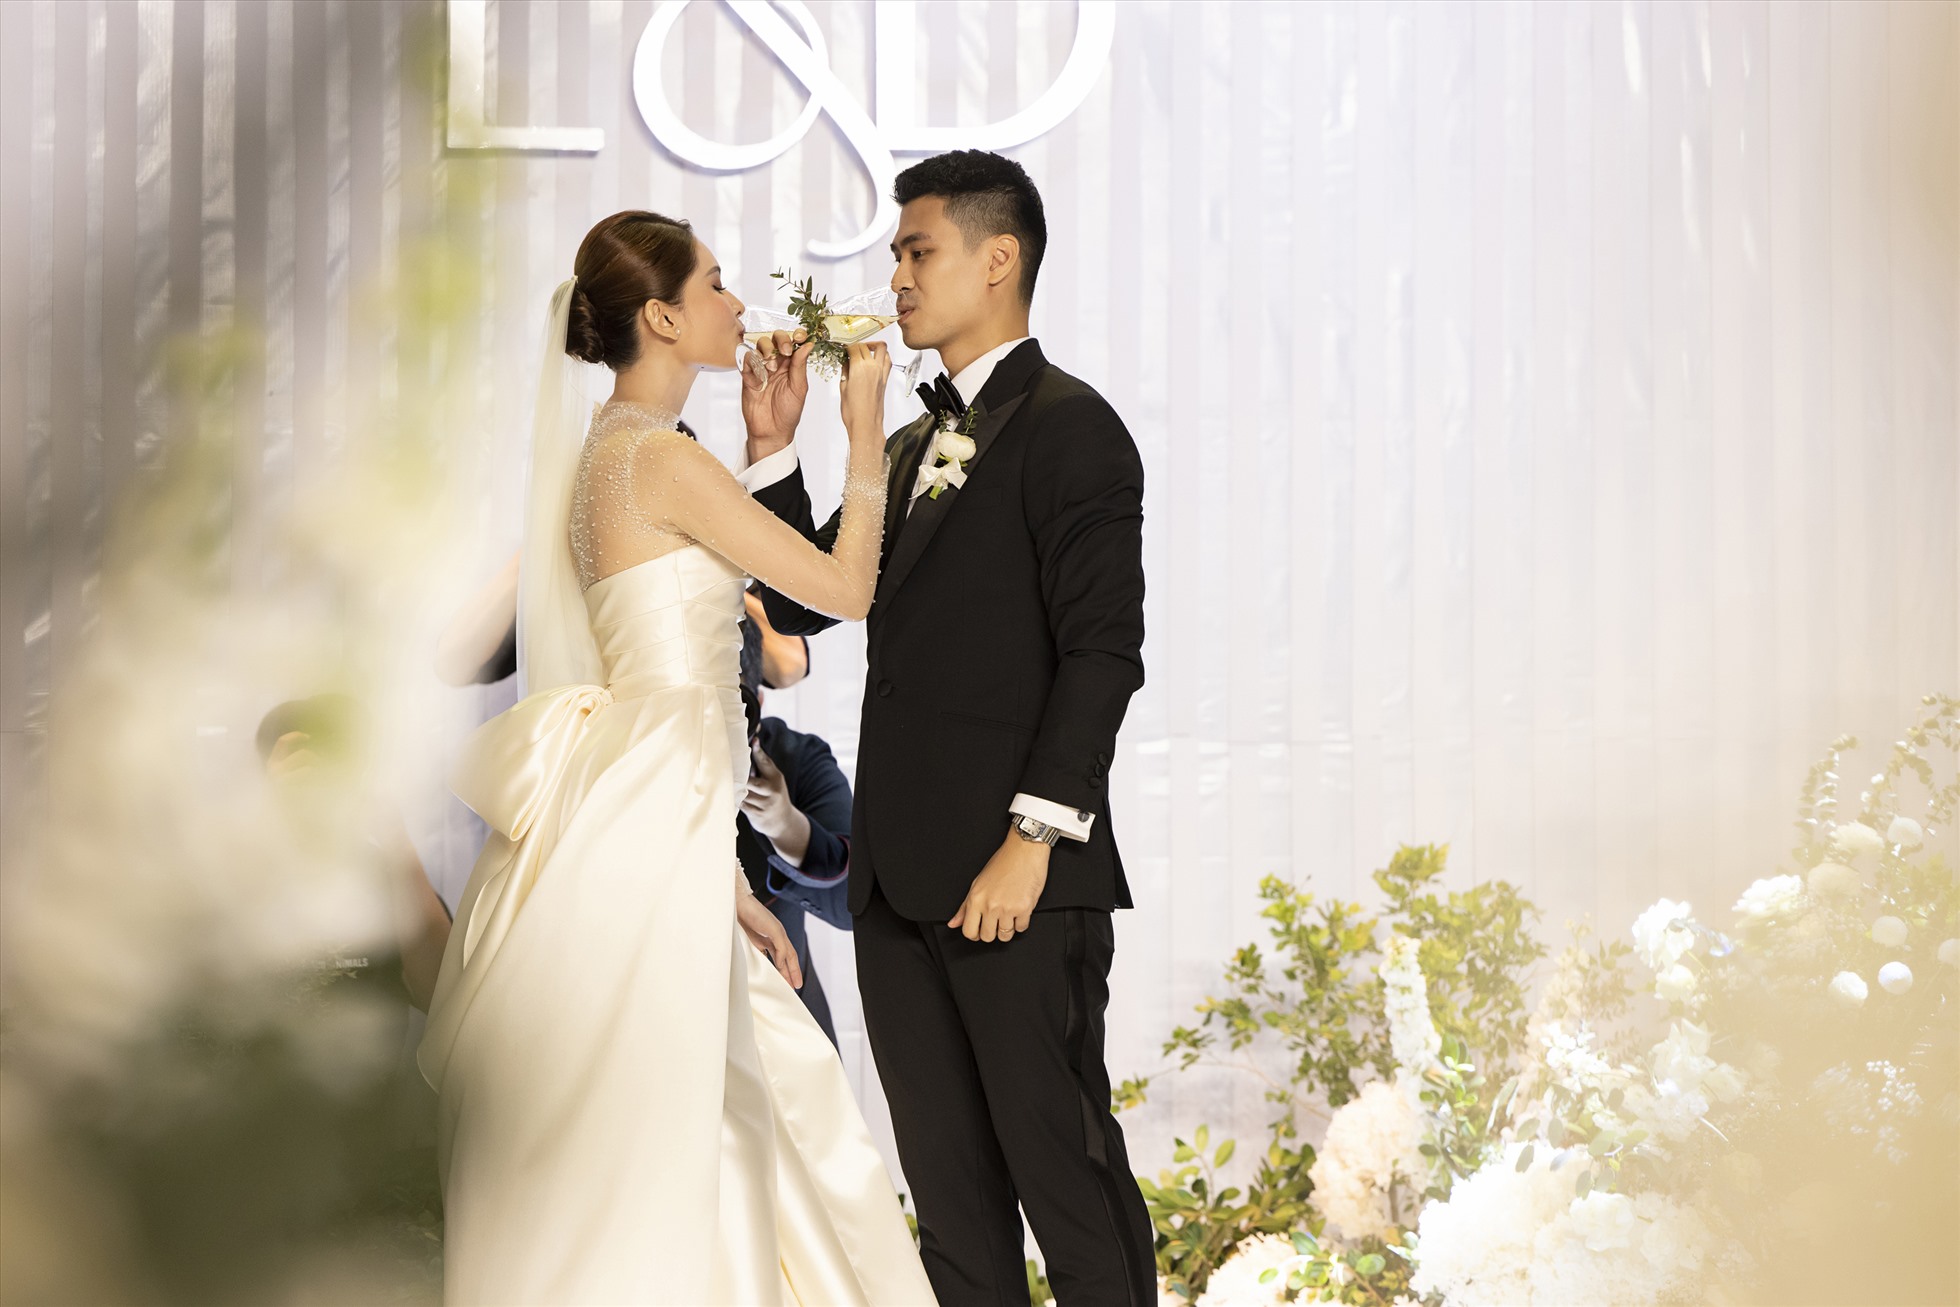 Toàn cảnh đám cưới cổ tích của Á hậu Thùy Dung và chồng thạc sĩ: Không gian cưới tràn ngập hoa tươi, thực đơn 'cao sang mỹ vị' - Ảnh 11